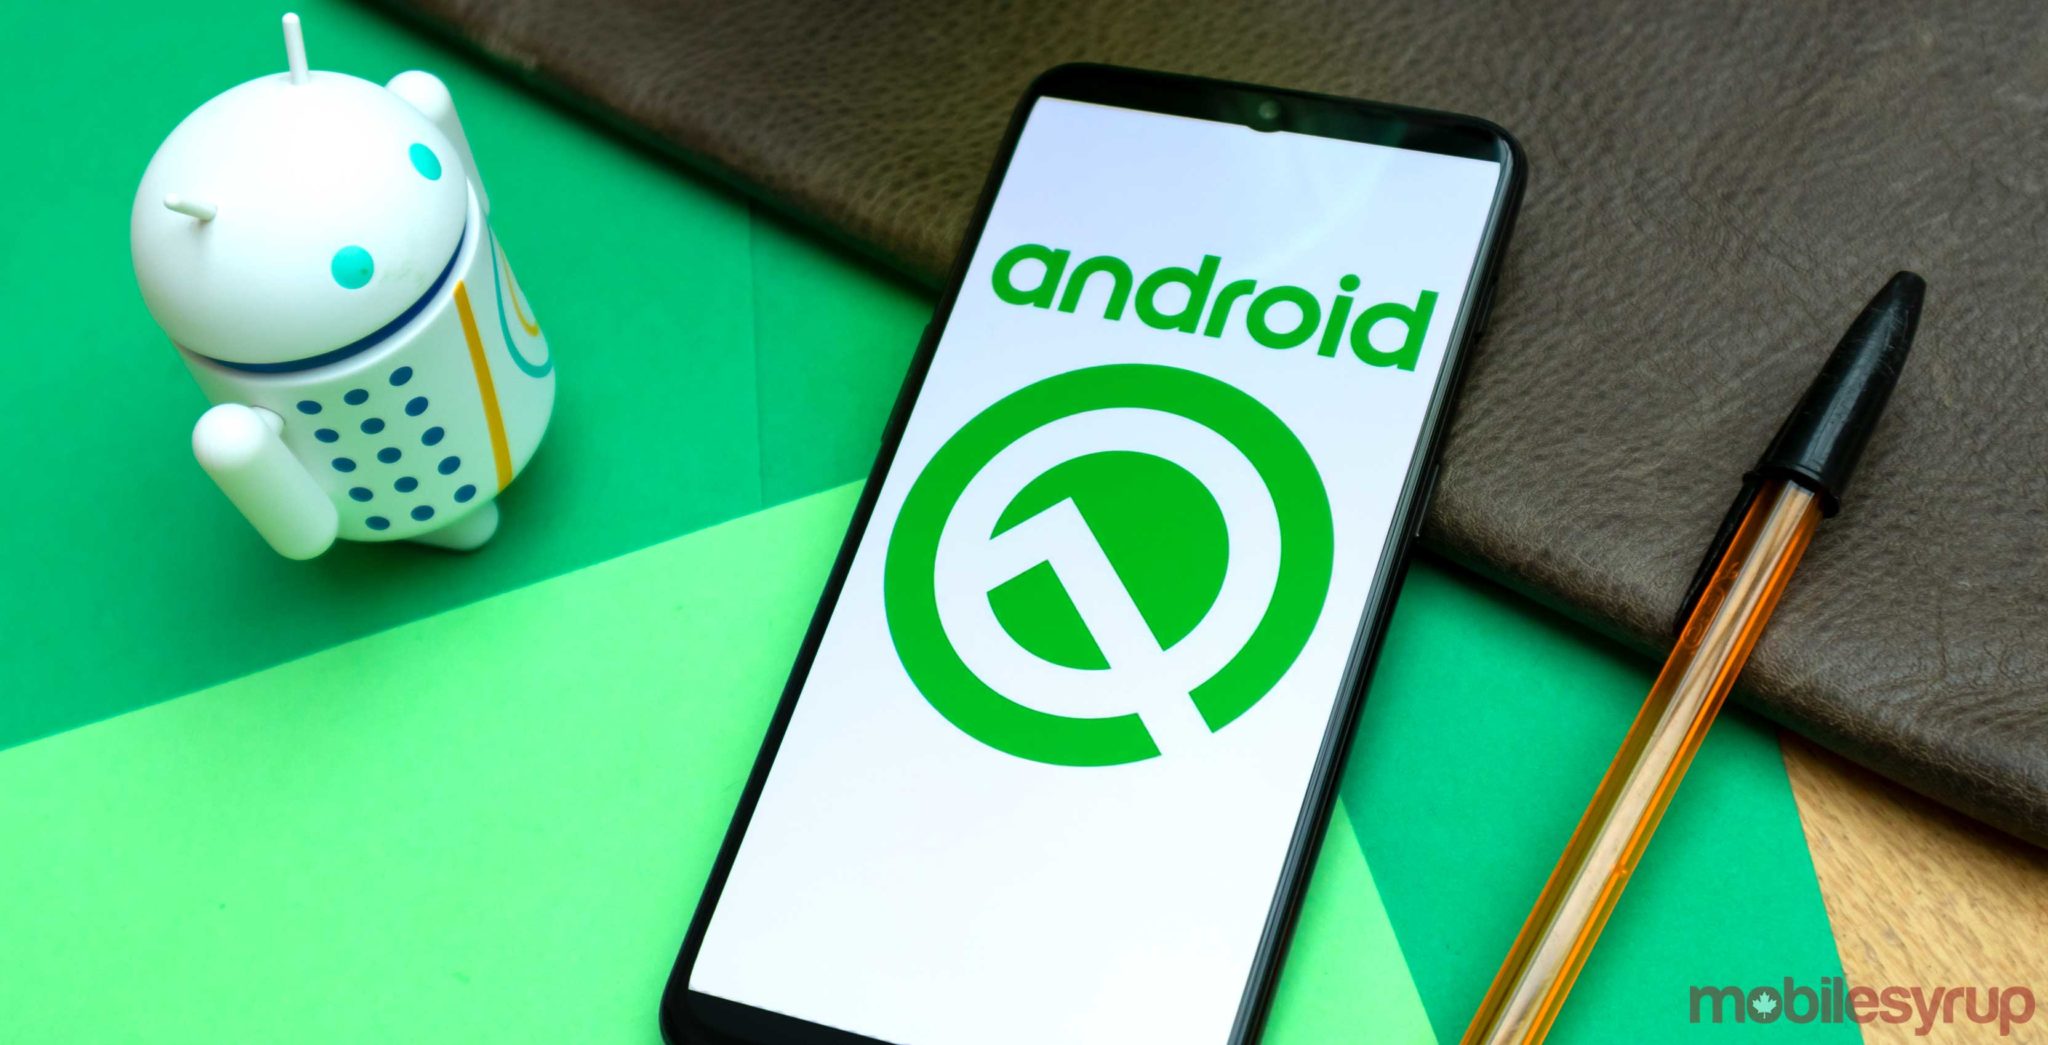 Les smartphones reçoivent la mise à jour Android Q